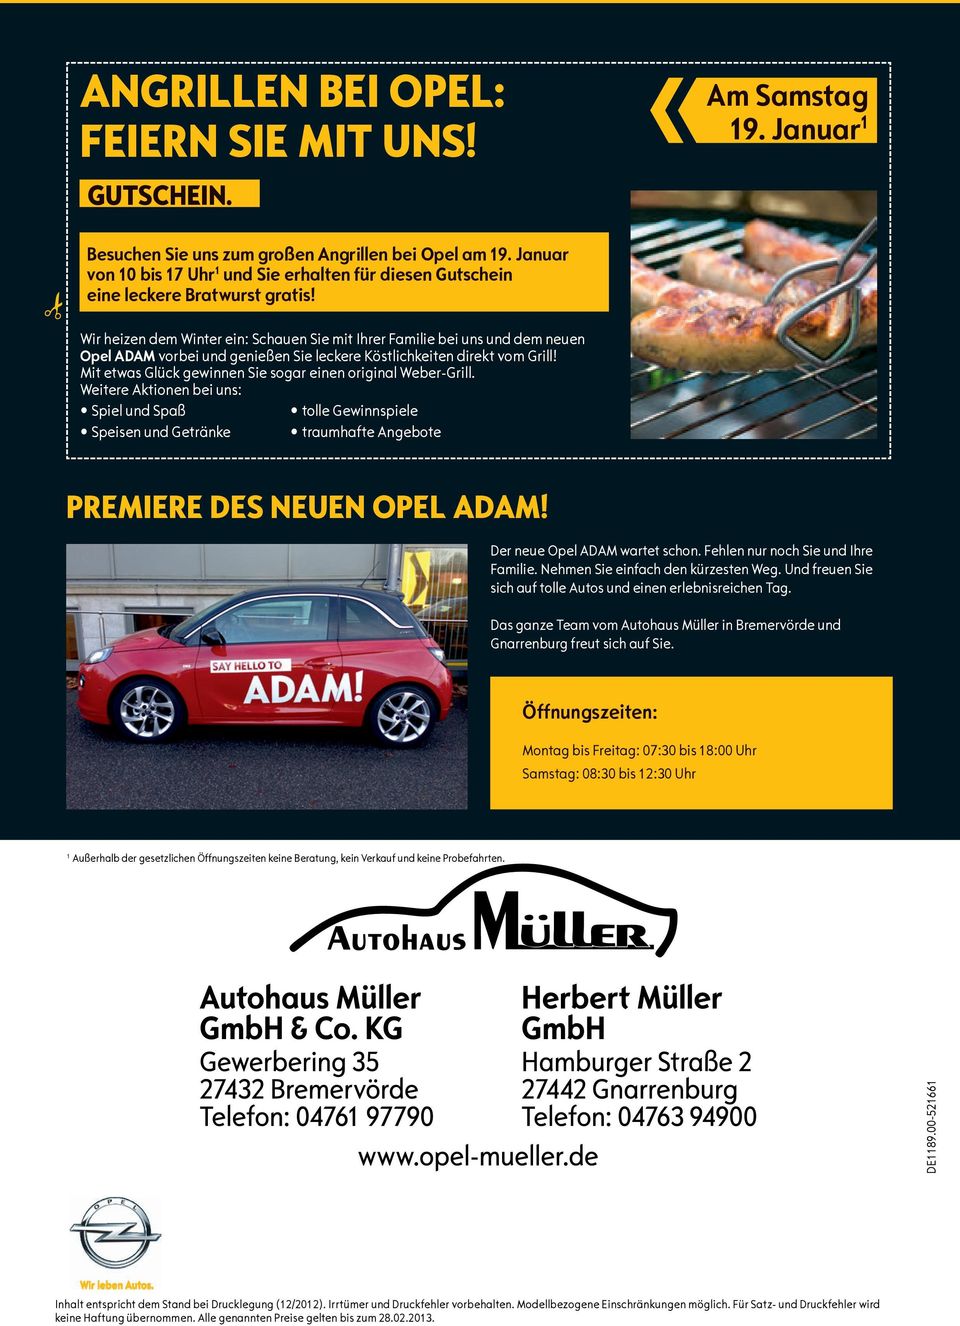 Wir heizen dem Winter ein: Schauen Sie mit Ihrer Familie bei uns und dem neuen Opel ADAM vorbei und genießen Sie leckere Köstlichkeiten direkt vom Grill!